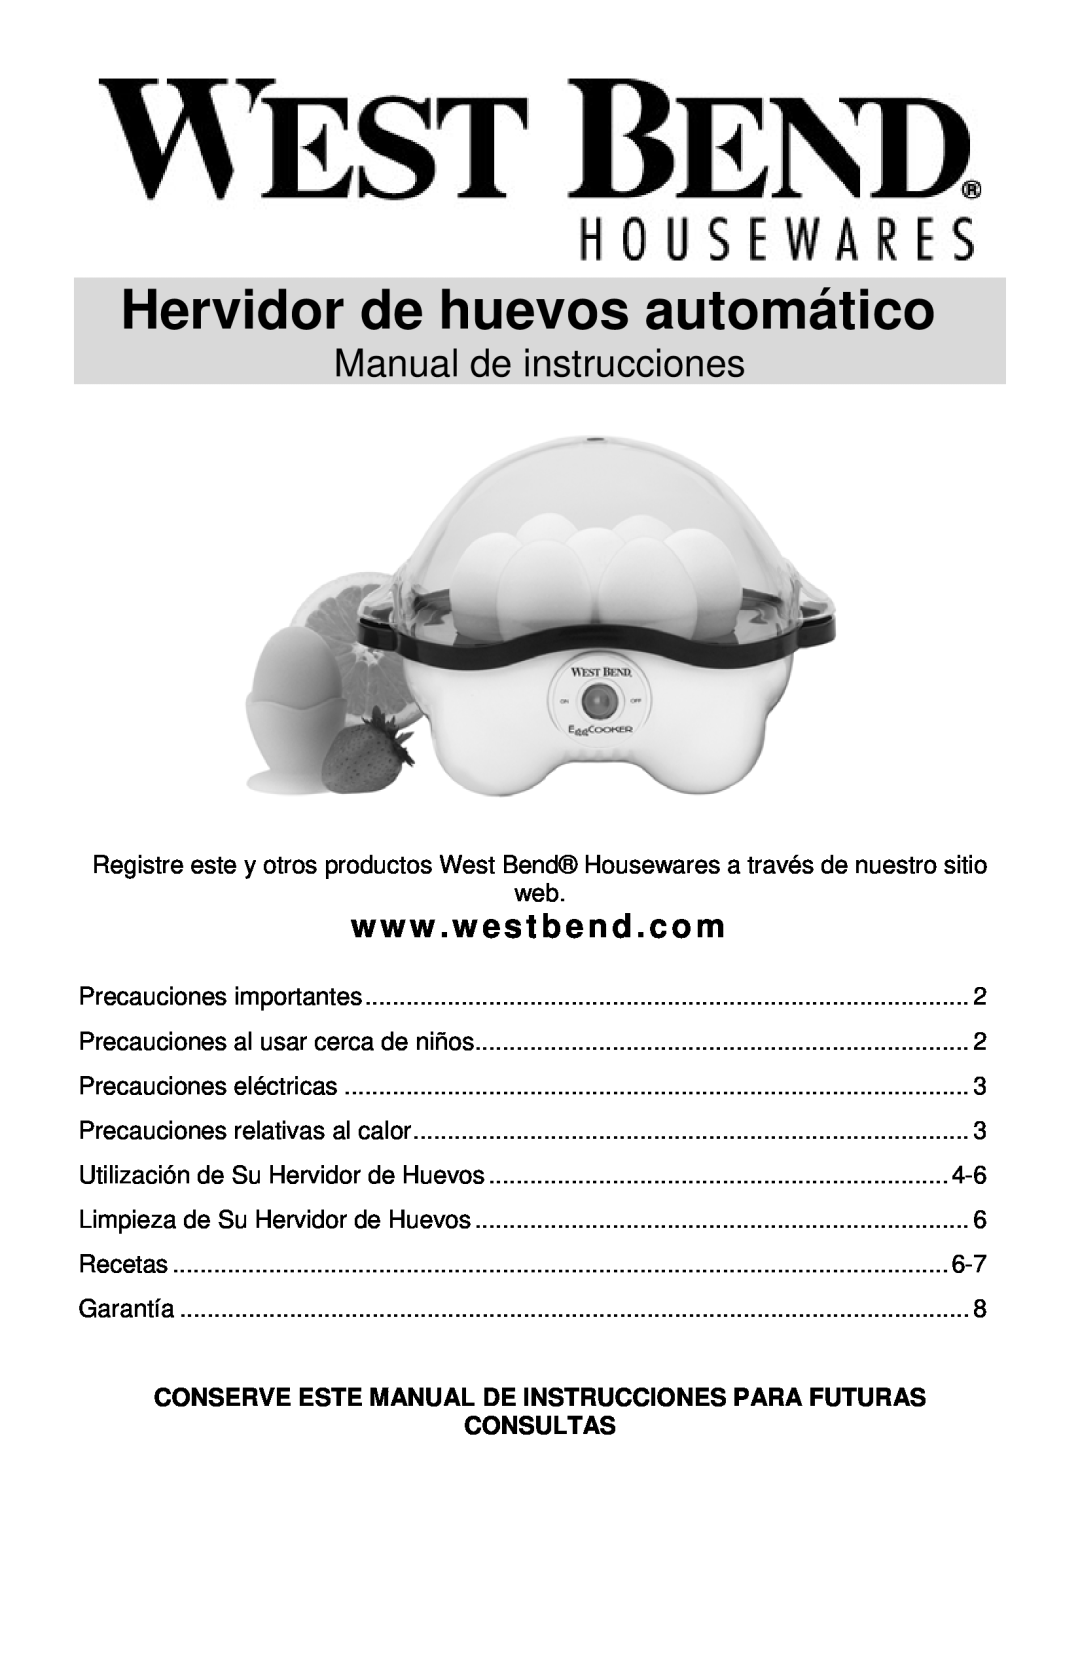 West Bend Automatic Egg Cooker Hervidor de huevos automático, Manual de instrucciones, Consultas, www . westbend . com 